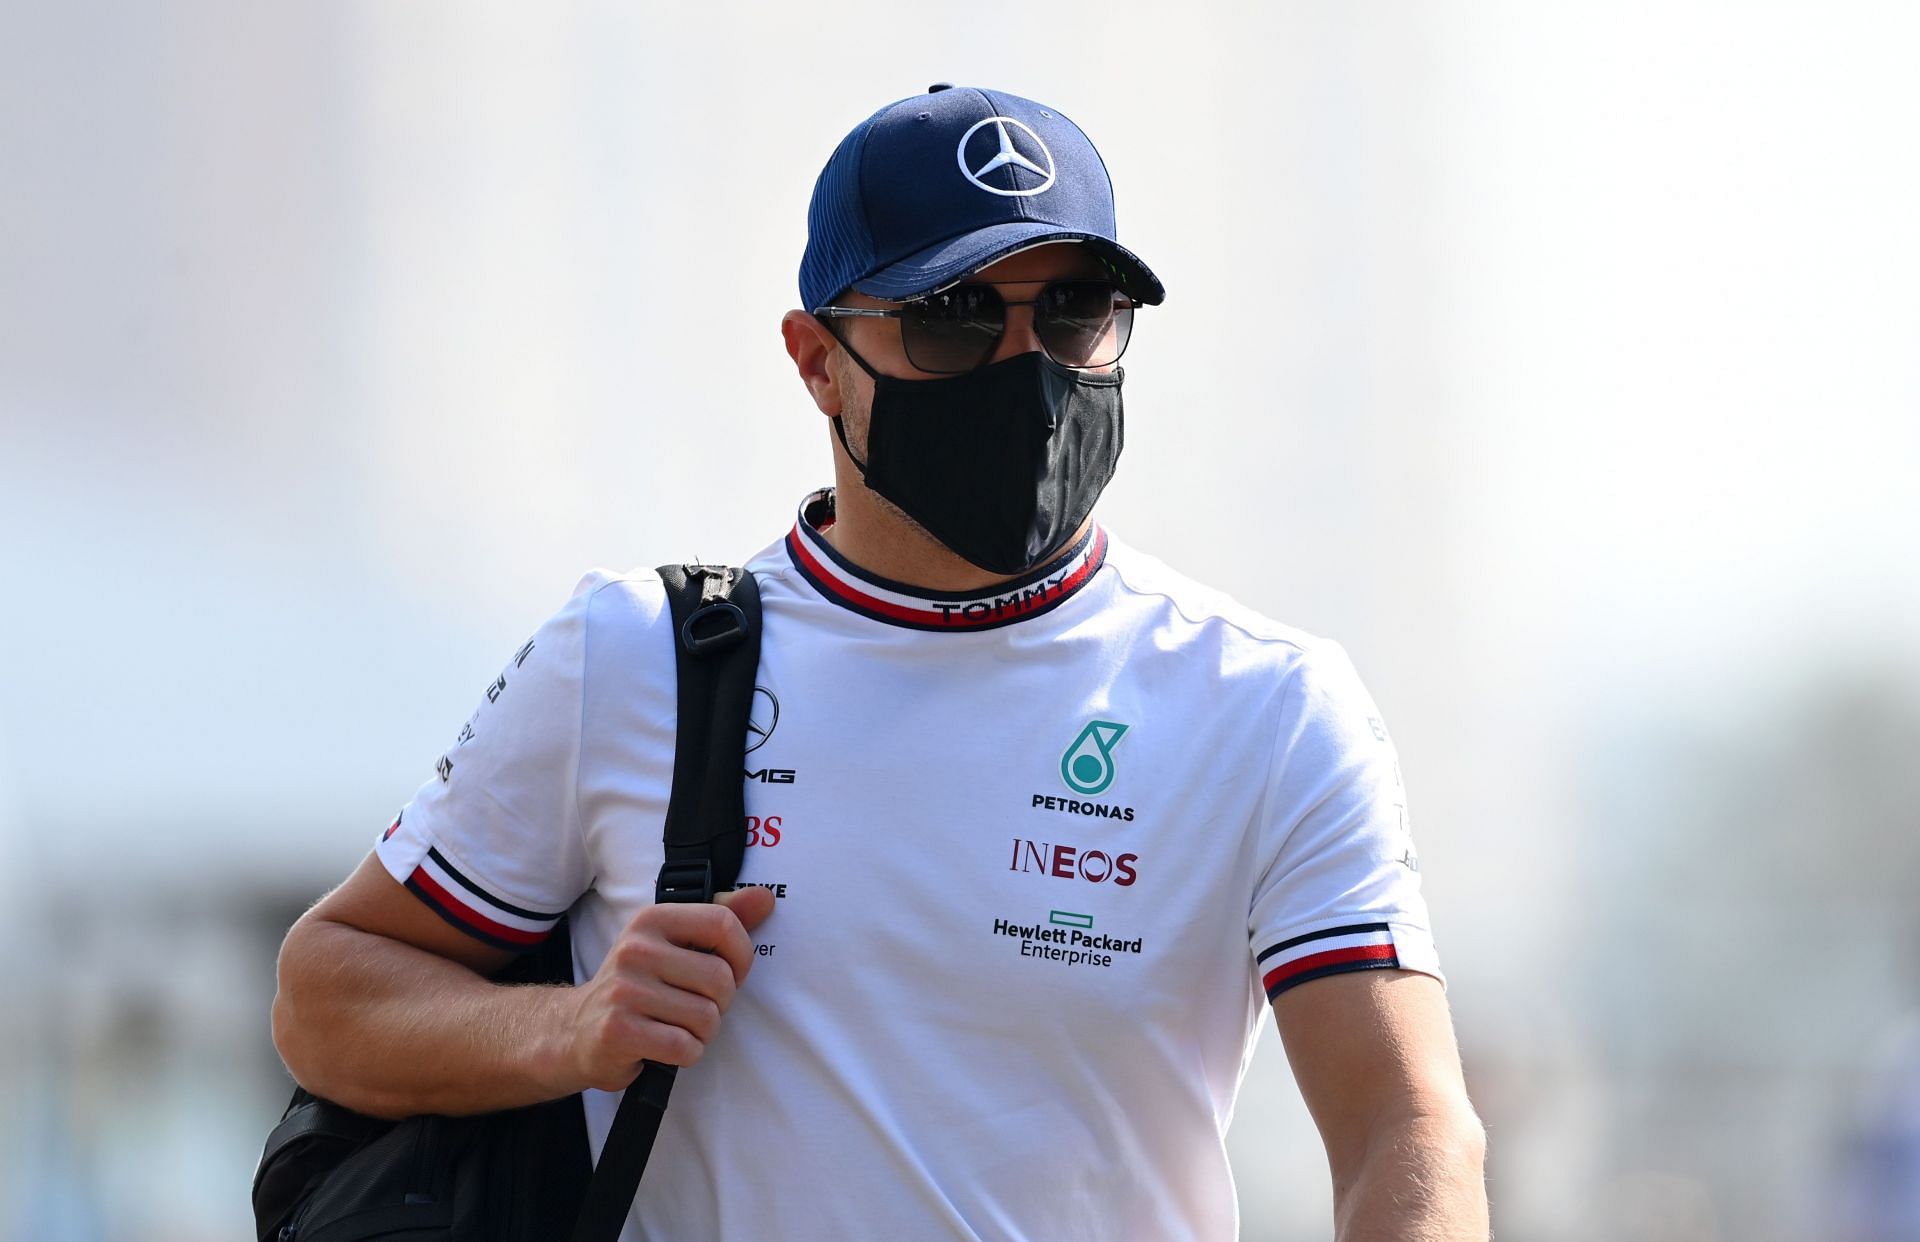 Valtteri Bottas walks in the Paddock during previews ahead of the 2021 Saudi Arabian Grand Prix. (Photo by Dan Mullan/Getty Images)